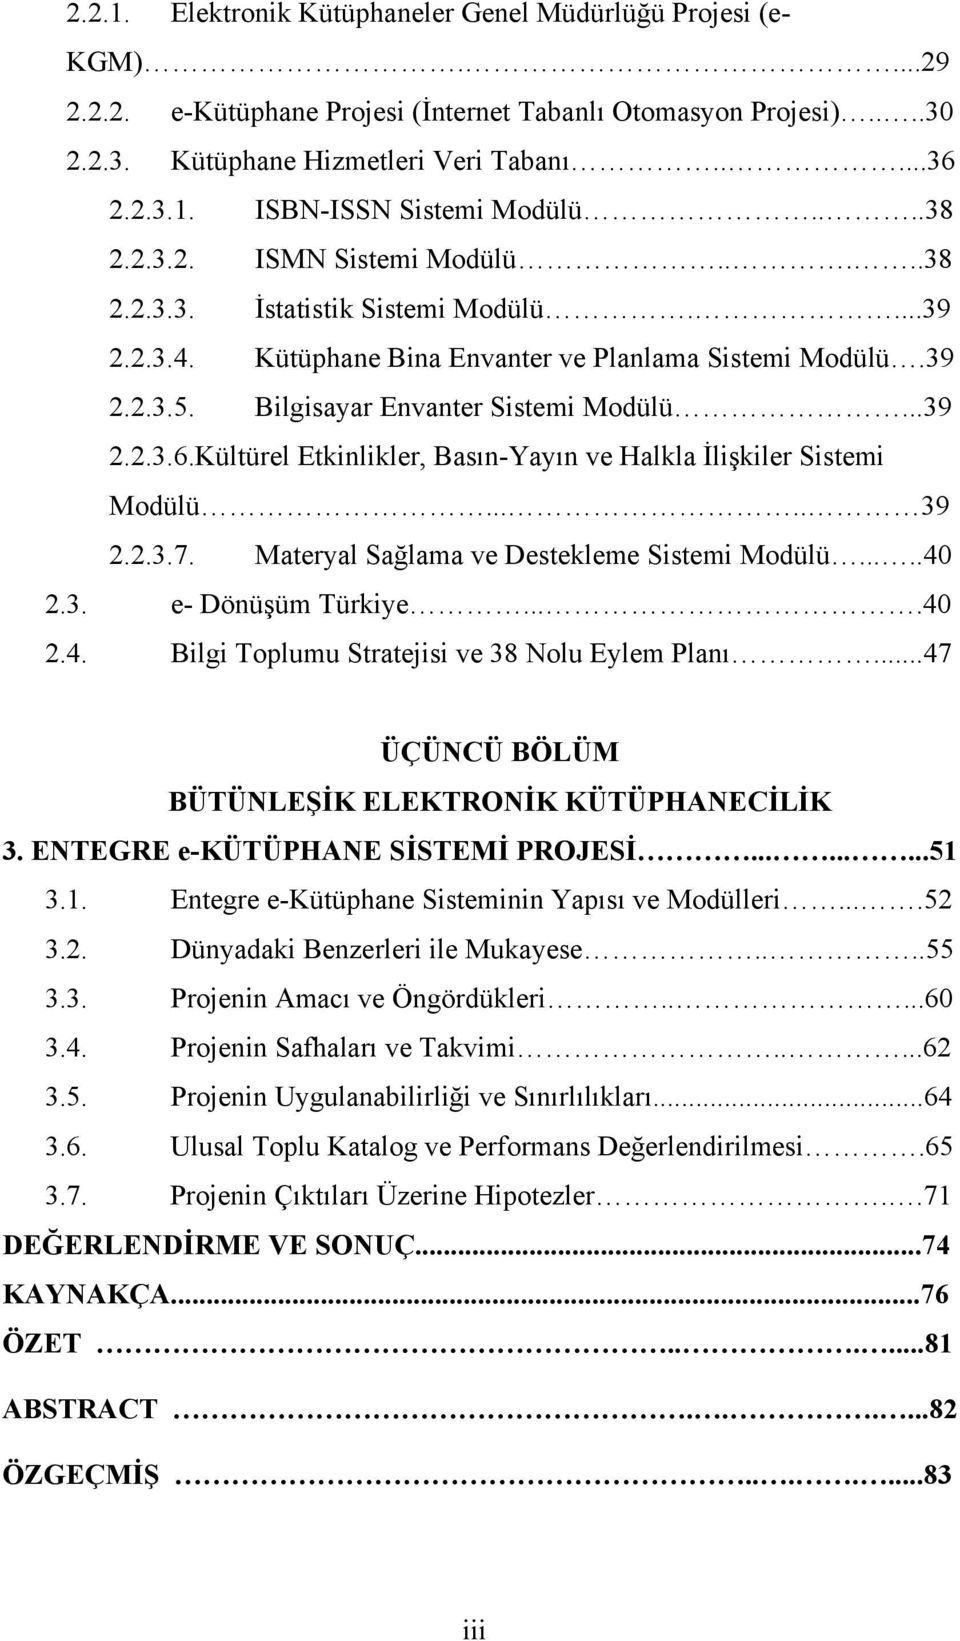 Kültürel Etkinlikler, Basın-Yayın ve Halkla İlişkiler Sistemi Modülü..... 39 2.2.3.7. Materyal Sağlama ve Destekleme Sistemi Modülü.....40 2.3. e- Dönüşüm Türkiye....40 2.4. Bilgi Toplumu Stratejisi ve 38 Nolu Eylem Planı.